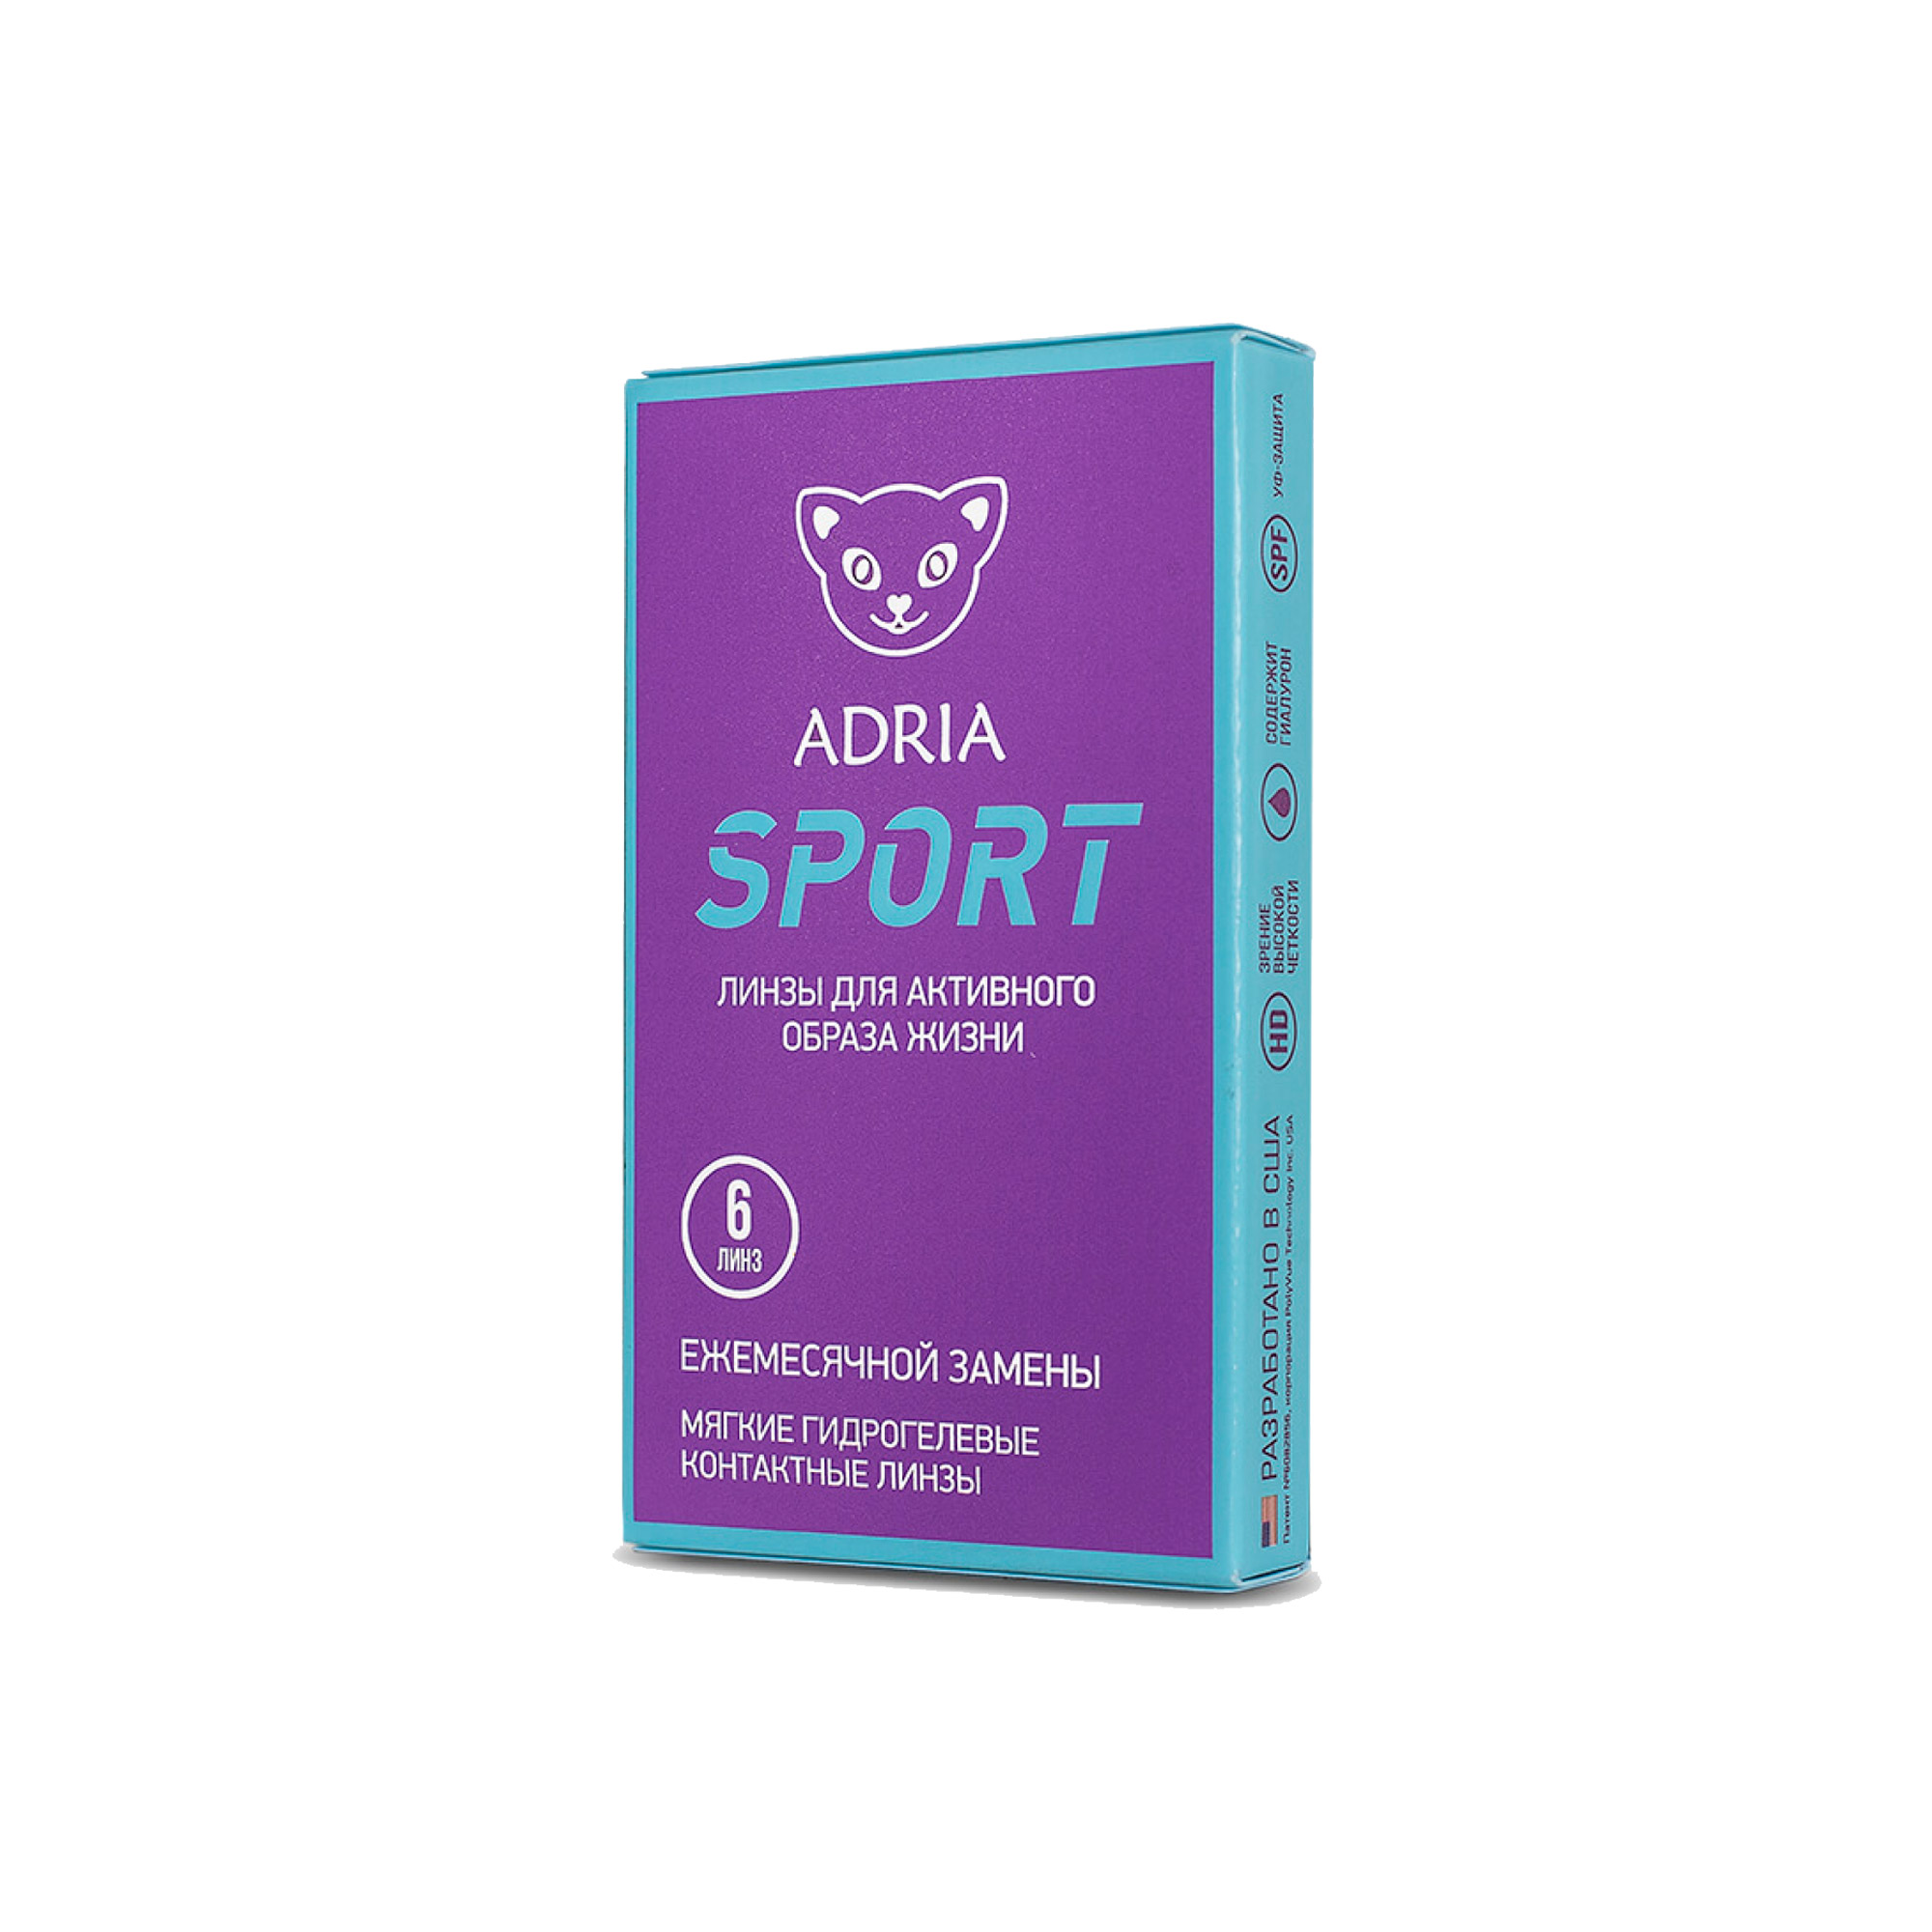 Контактные линзы Morning Q55 (6 pack) adria sport